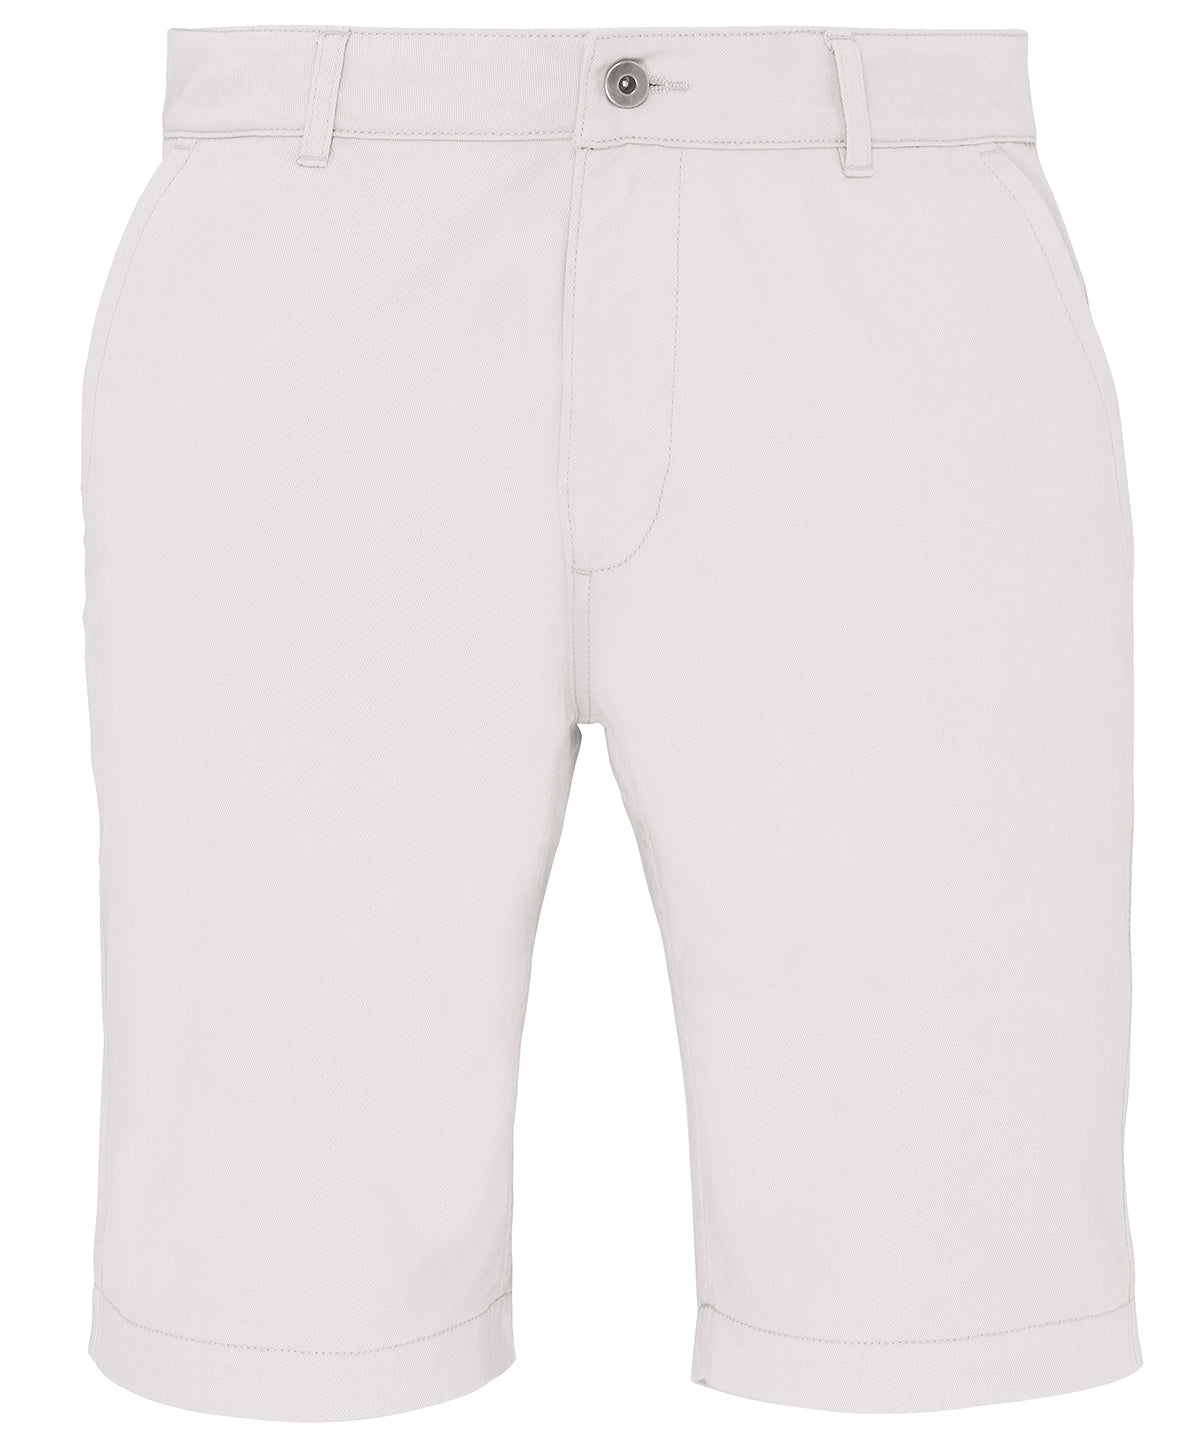 Stuttbuxur - Men's Chino Shorts